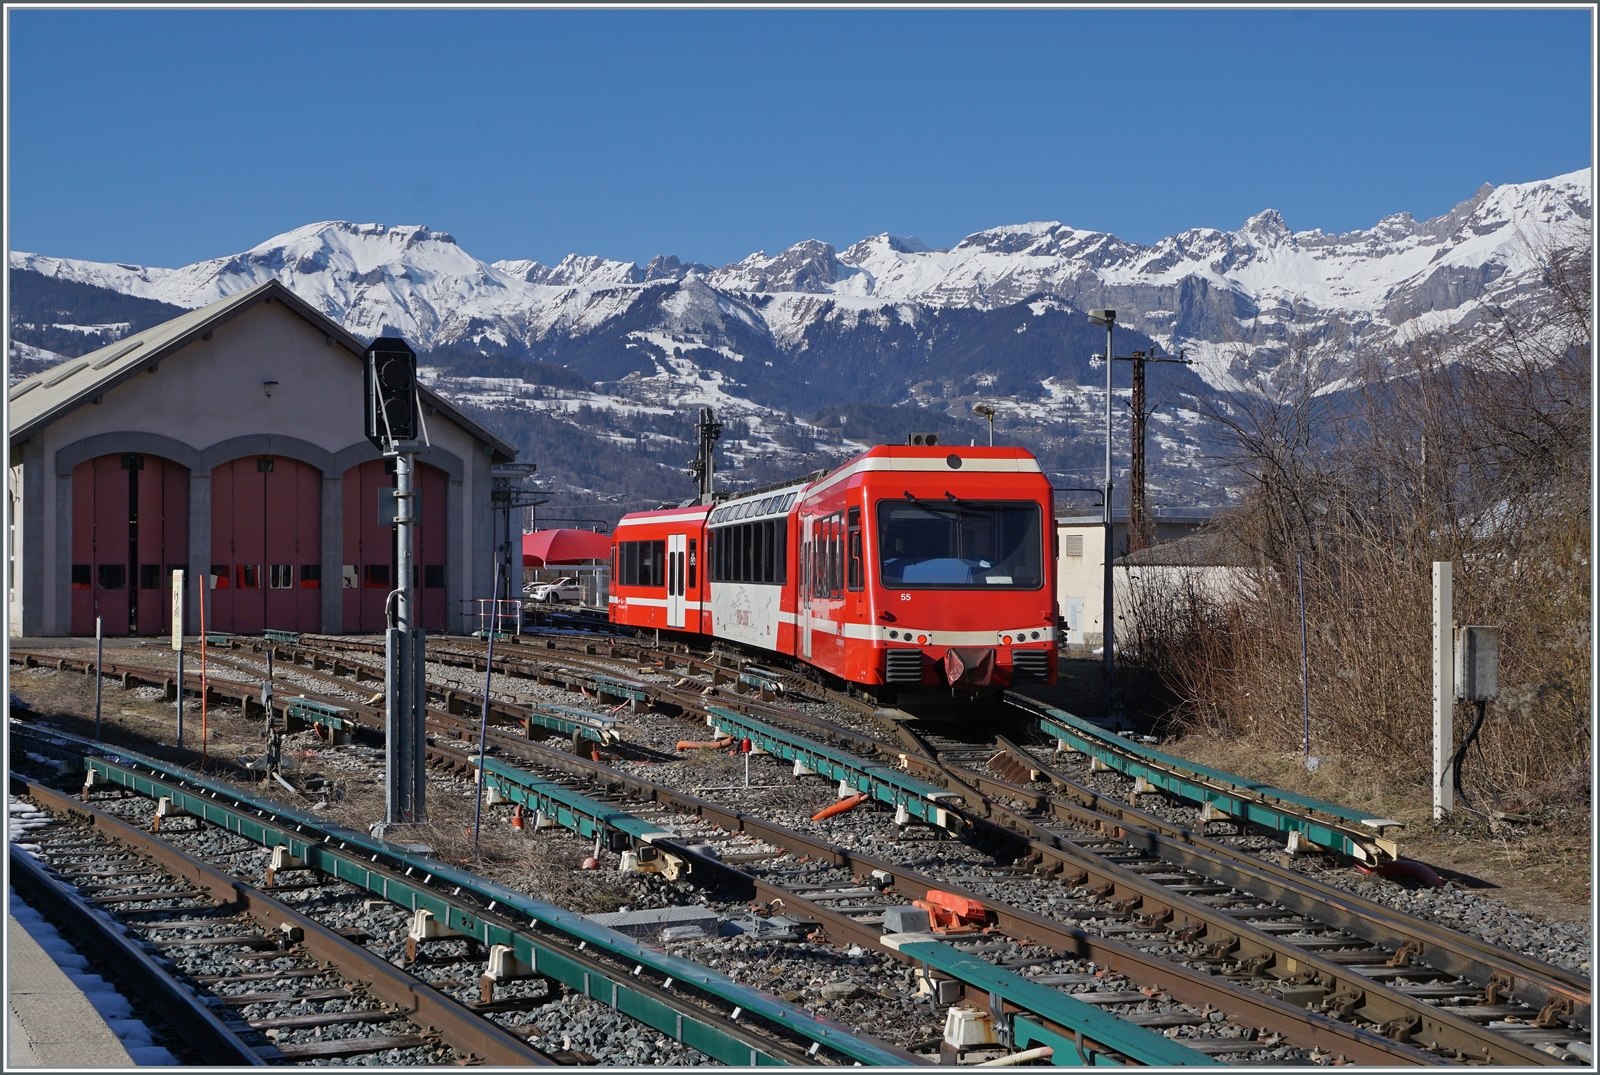 Nachdem in Saint Germain-Les-Bains-le-Fayet der SNCF Z 800 803/804 als TER nach Vallorcine bereitgestellt wurde, war es nun am SNCF Z 850 055 der von Vallorcine angekommen ist, sich ins Dpt zu begeben. Und dabei kann der Triebzug auch recht gut fotografiert werden.

14 Feb. 2023